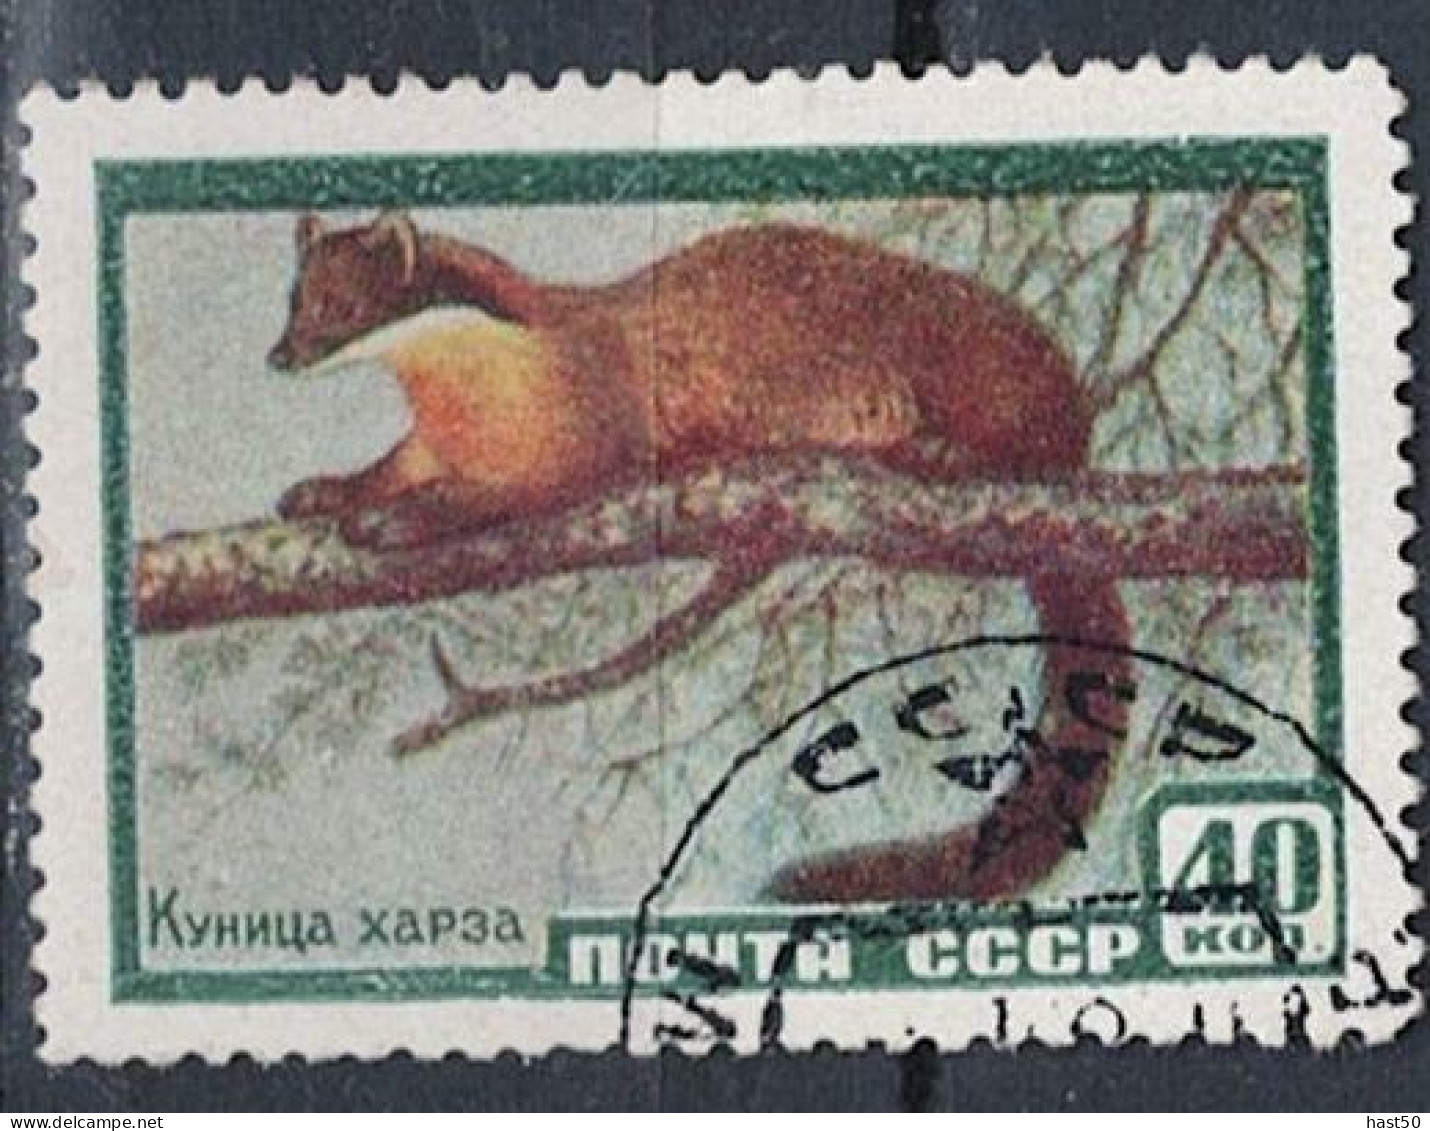 Sowjetunion UdSSR - Baummarder (Martes Martes) (MiNr. 2242) 1957 - Gest Used Obl - Used Stamps